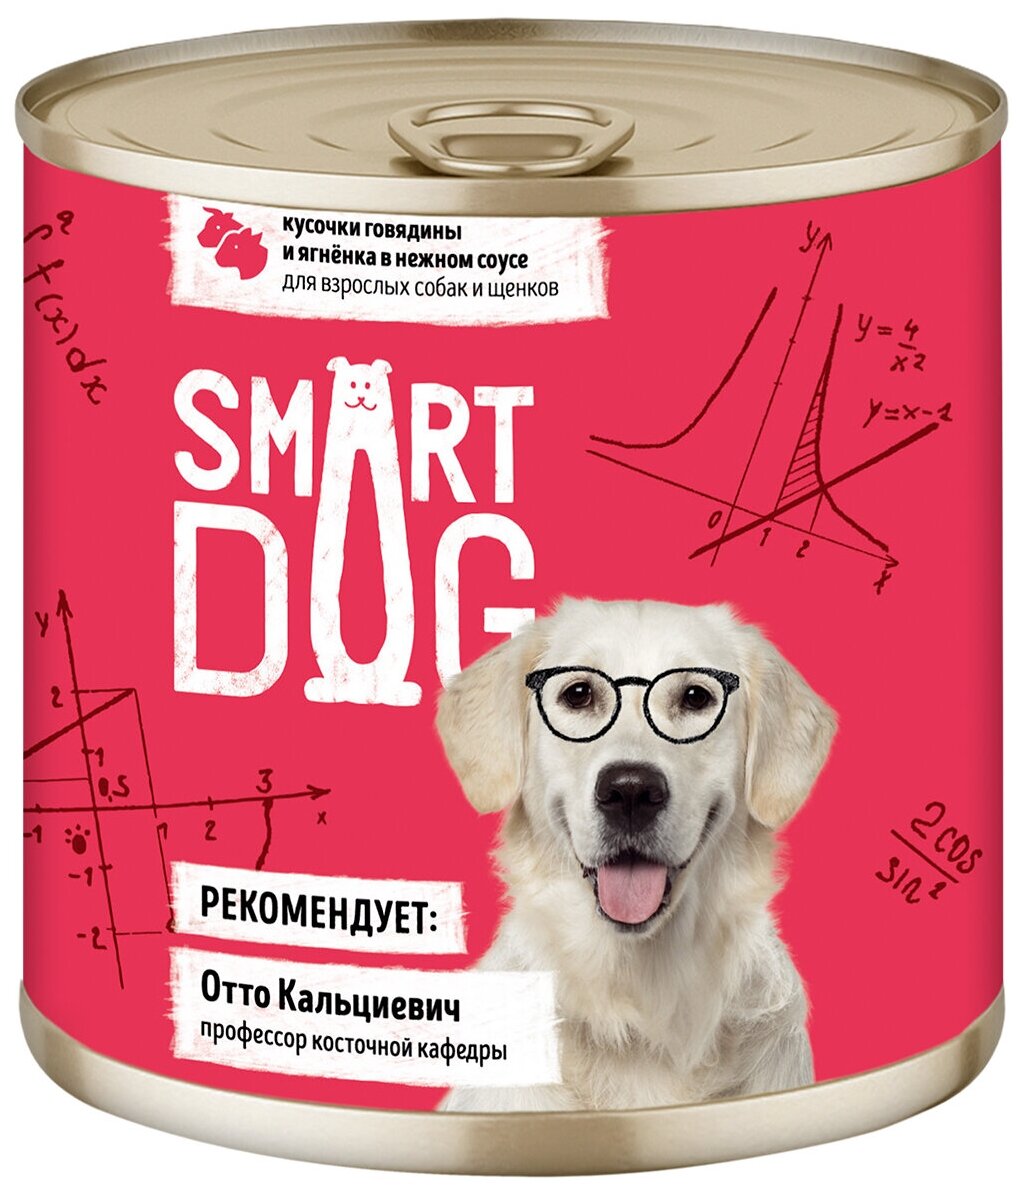 Smart Dog консервы Консервы для взрослых собак и щенков кусочки говядины и ягненка в нежном соусе 22ел16 43752 0,85 кг 43752 (2 шт)